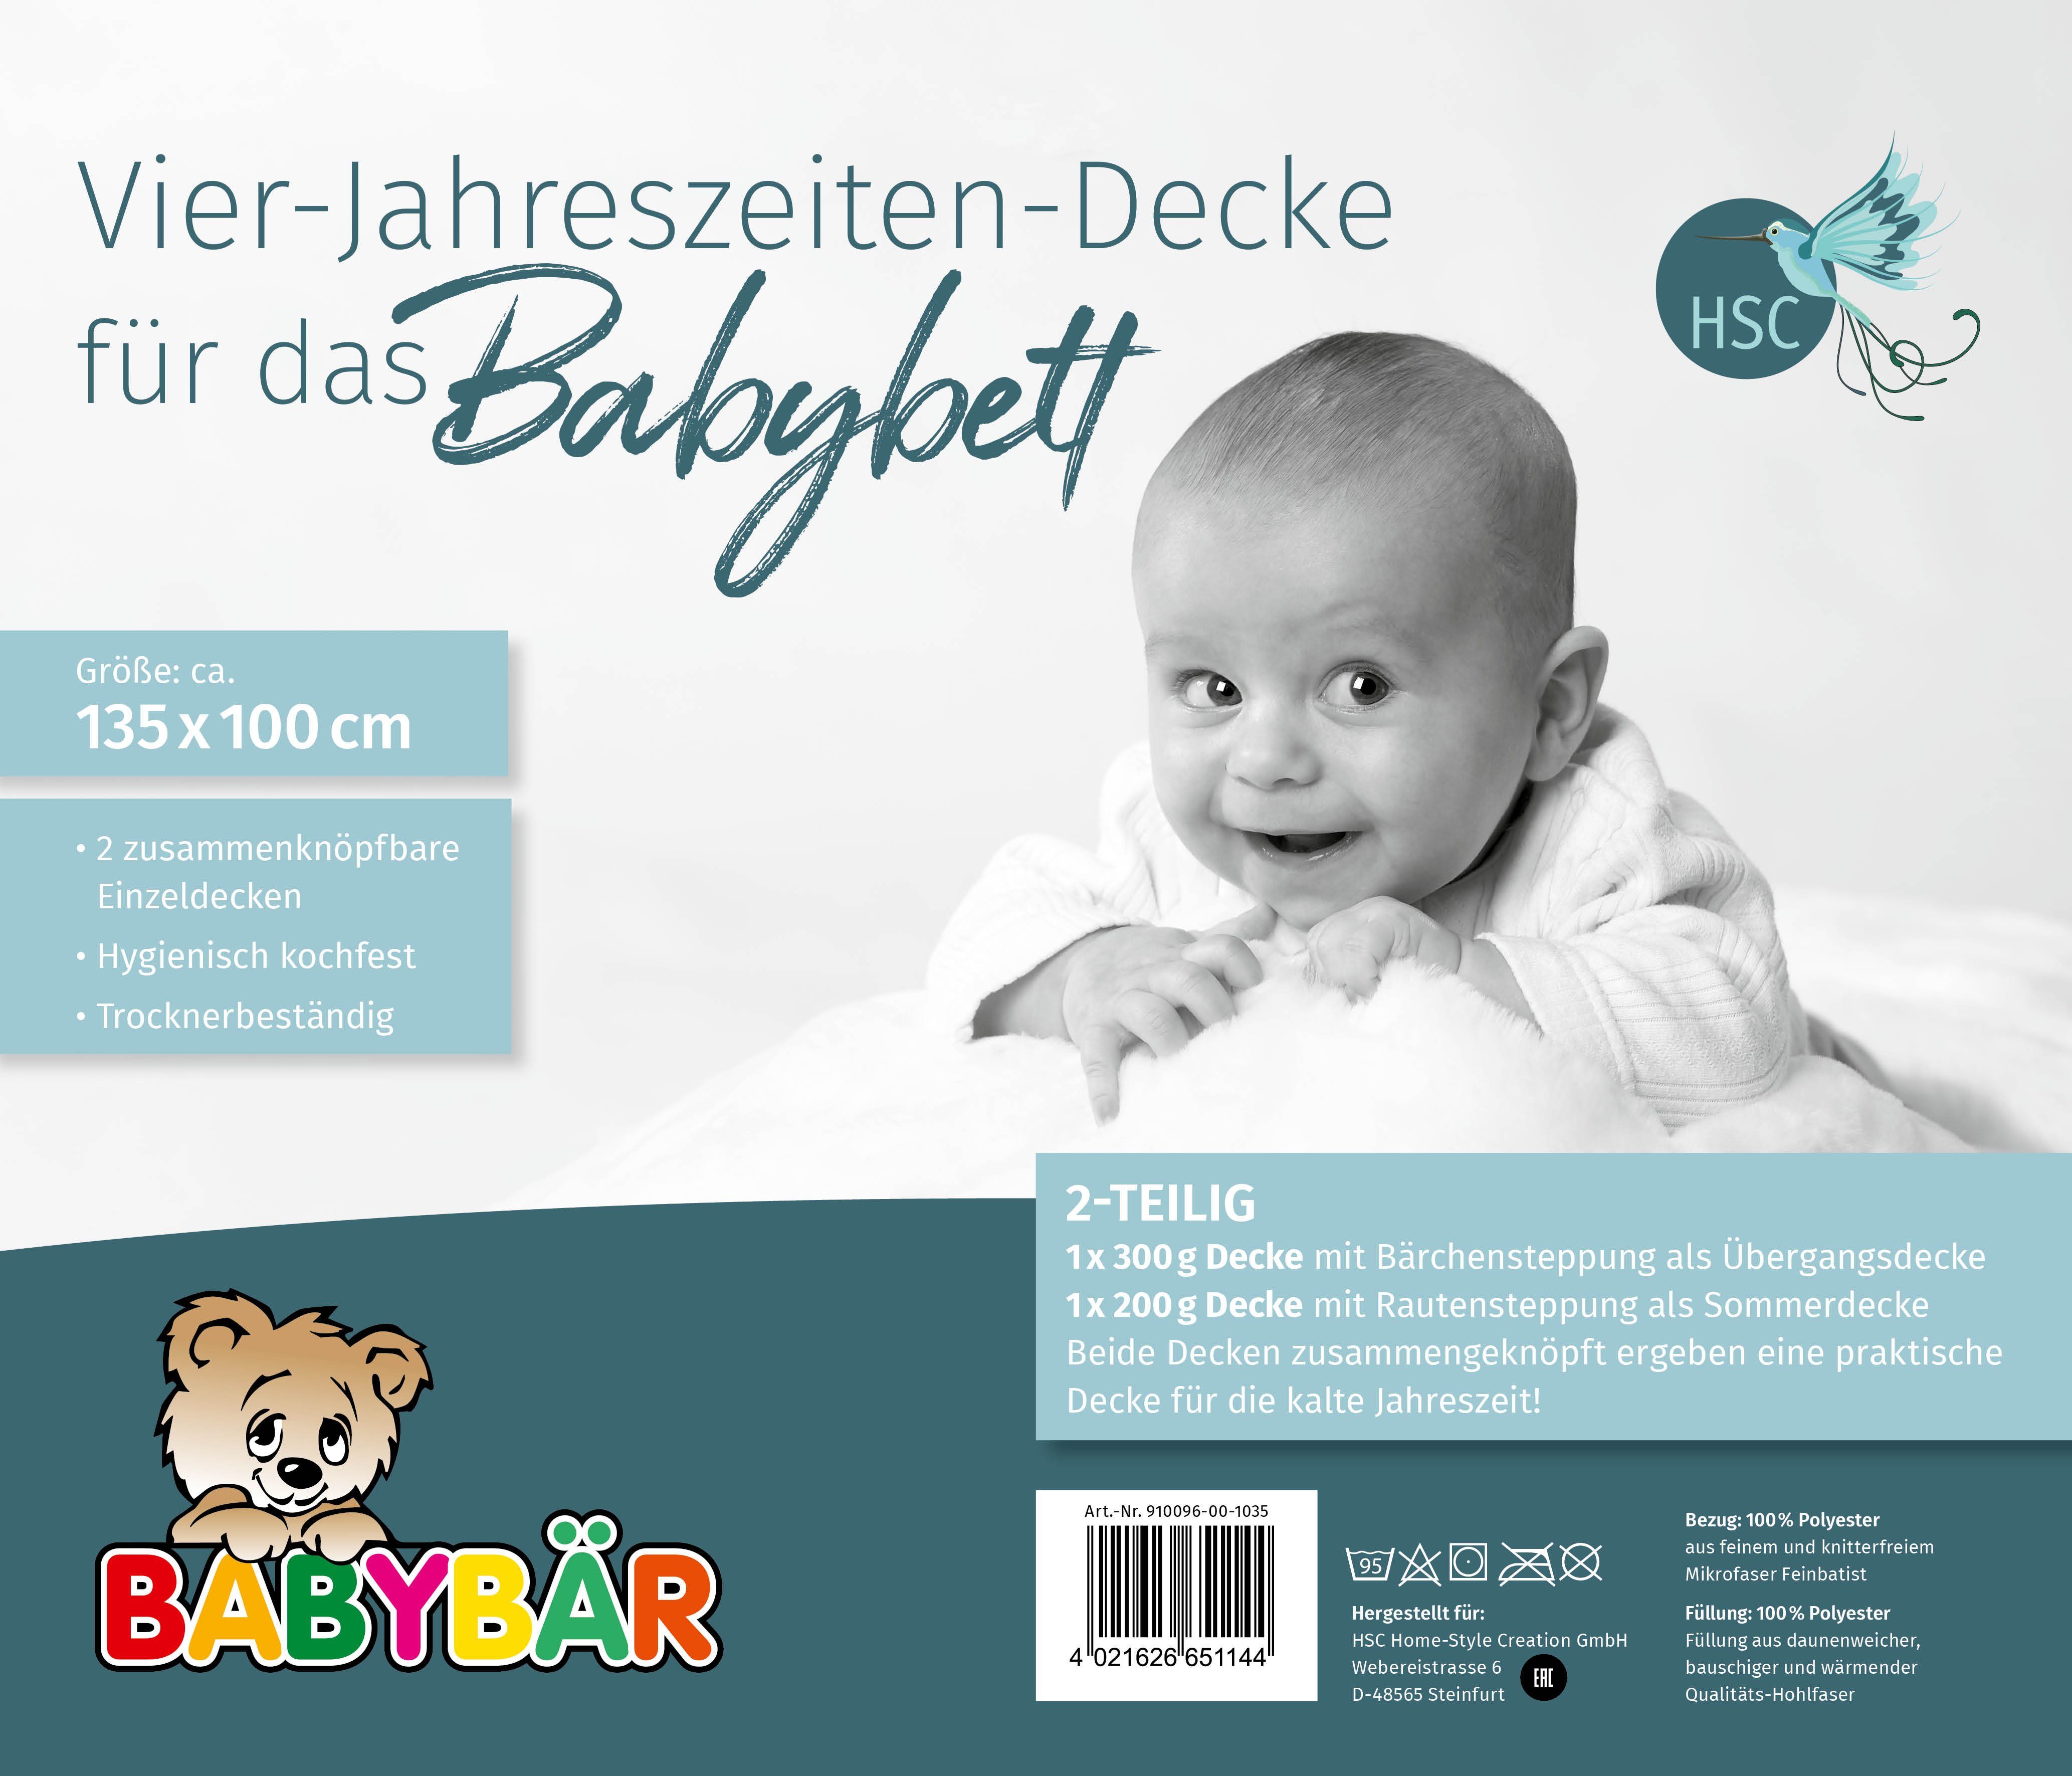 Babybettdecke, Baby angenehmes Füllung: für und Schlafklima, ein Home-Style-Creation Polyester, 100% GmbH, 100% Bezug: HSC Polyester, wärmeausgleichend. 2-teilig, Vierjahreszeitenbettdecke atmungsaktiv